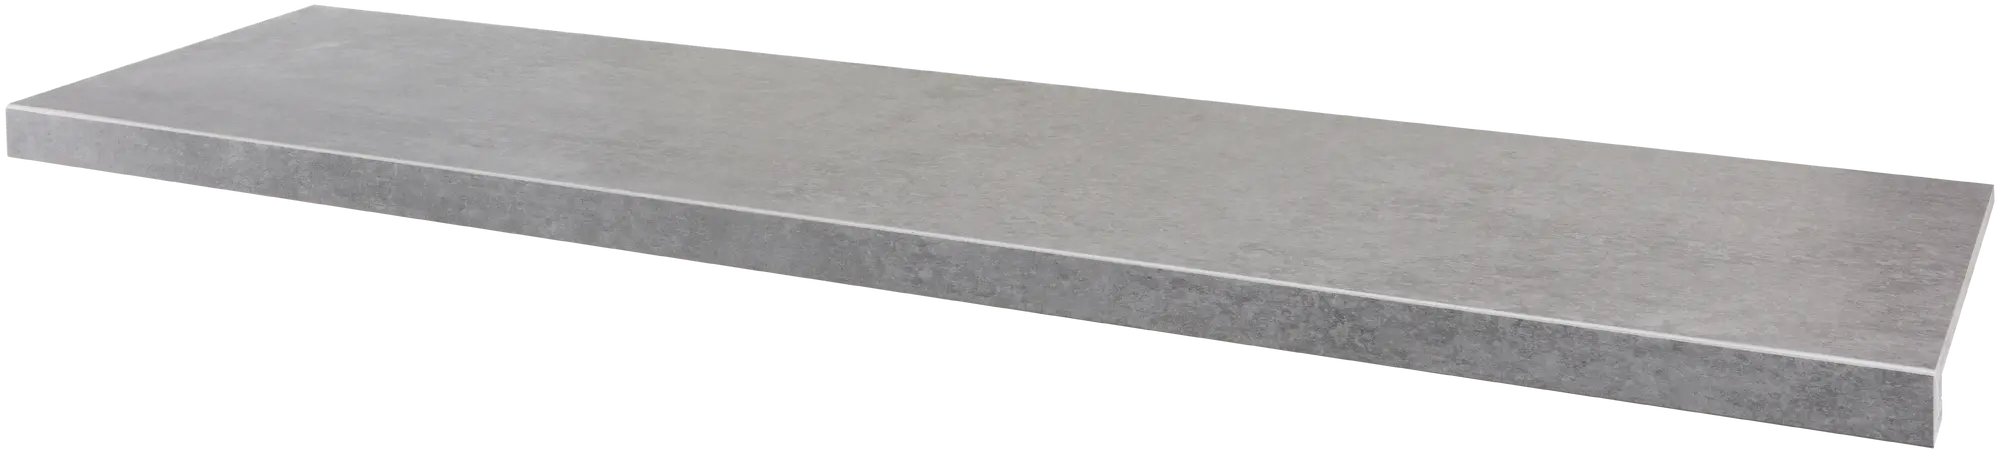 Peldaño de escalera porcelánico artens martins efecto cemento marengo 30x120 cm